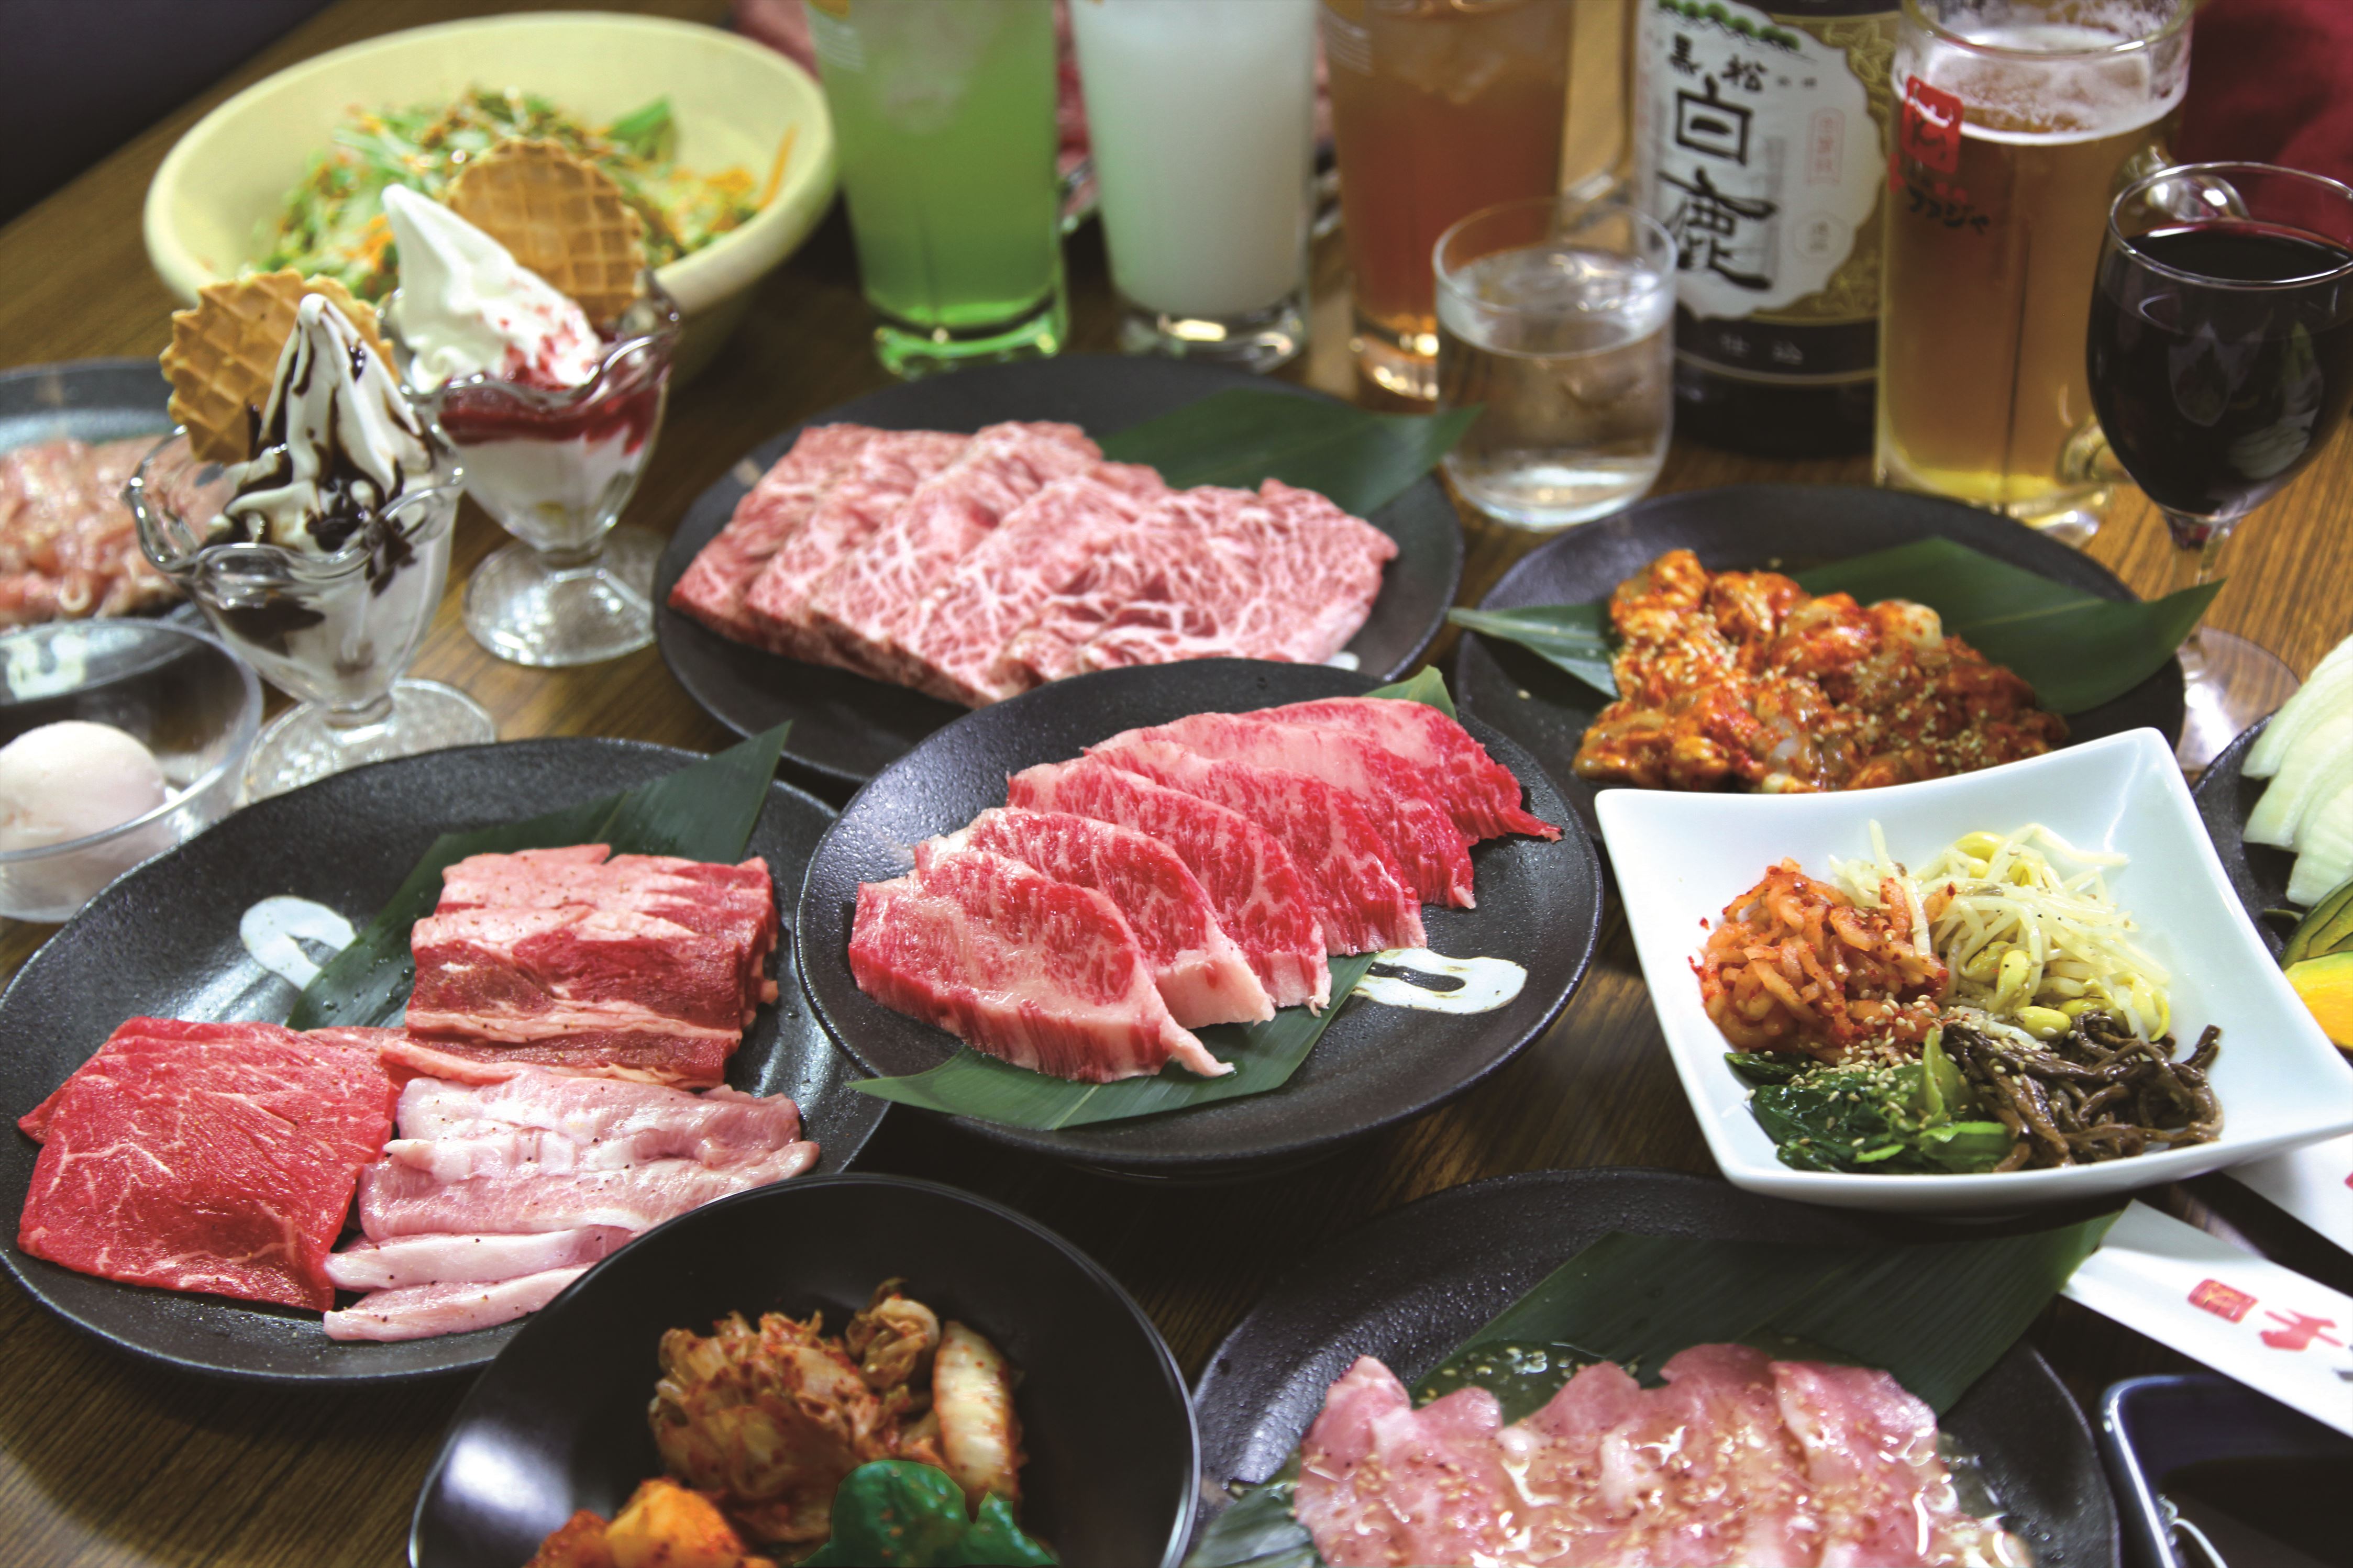 日本初 サラリーマンは名刺を見せたら焼き肉食べ飲み放題が1 000円 大阪 上新庄の焼肉店がプレミアムフライデー限定の プレミアム割 実施 Prでっせ